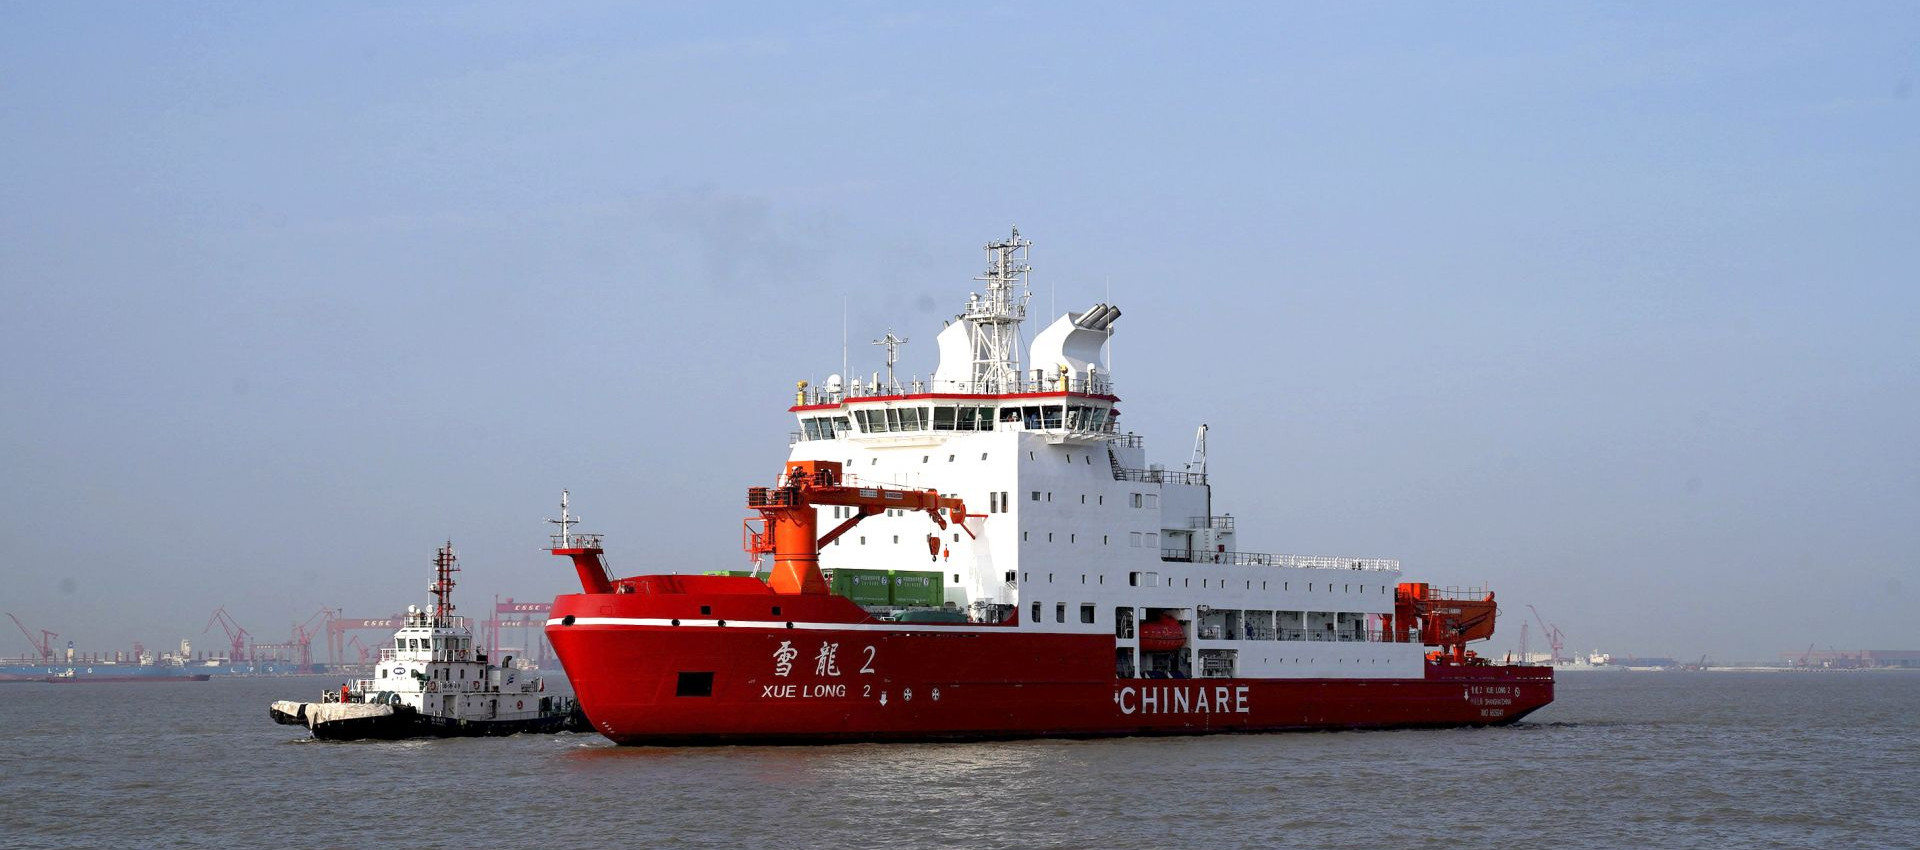 ultimo caso aziendale circa Il cavo di saldatura di Longteng è stato usato sulla nave polare di spedizione di Xuelong